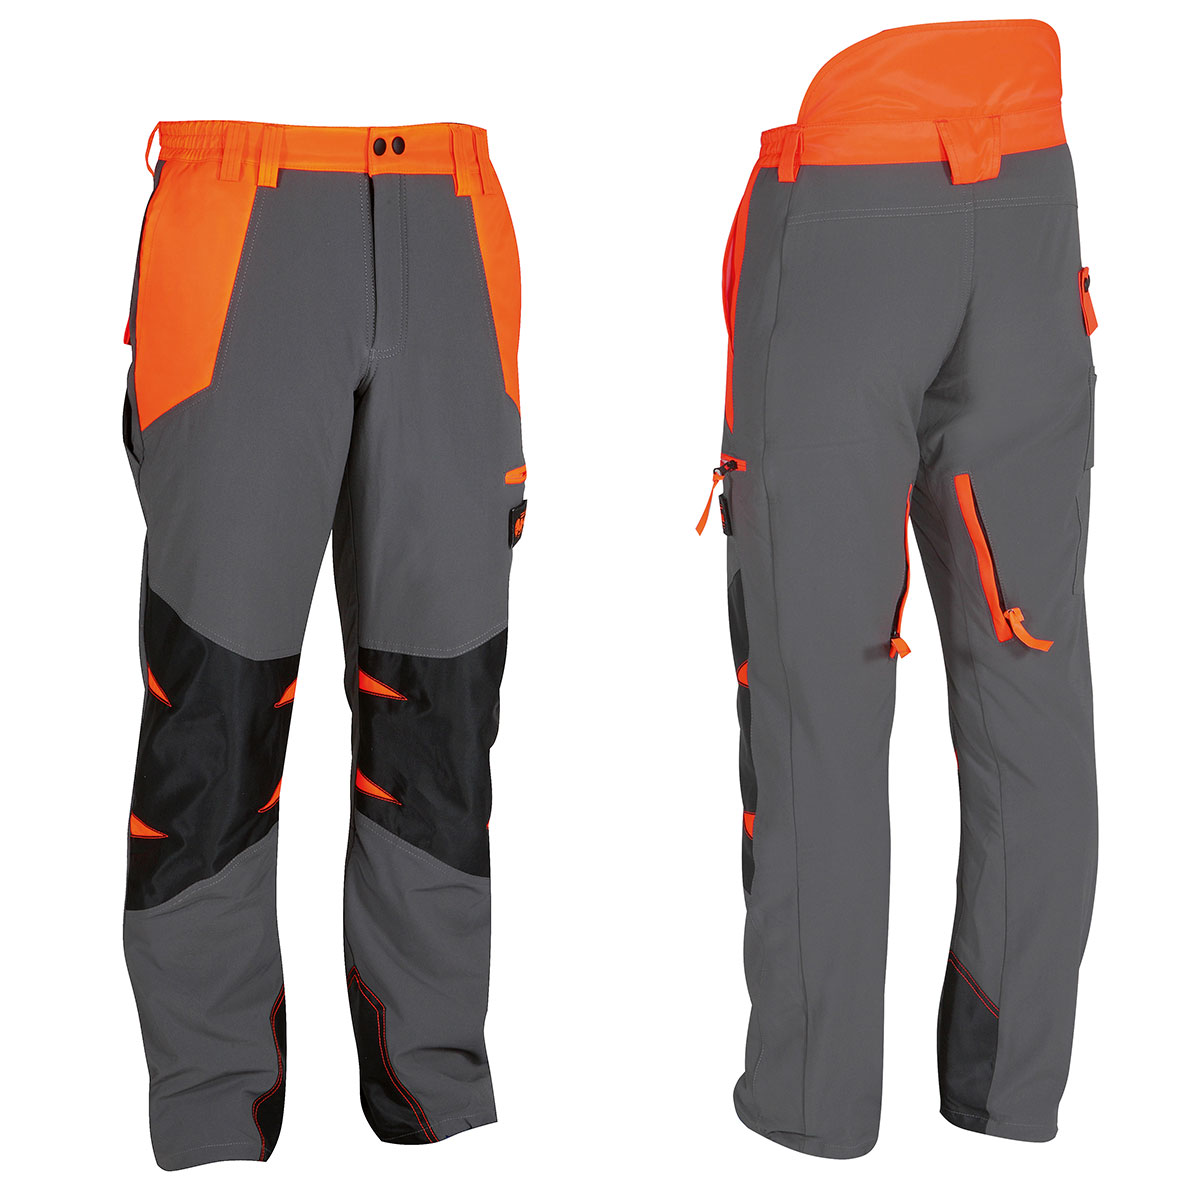 Pantalone professionale con protezione antitaglio Air-light